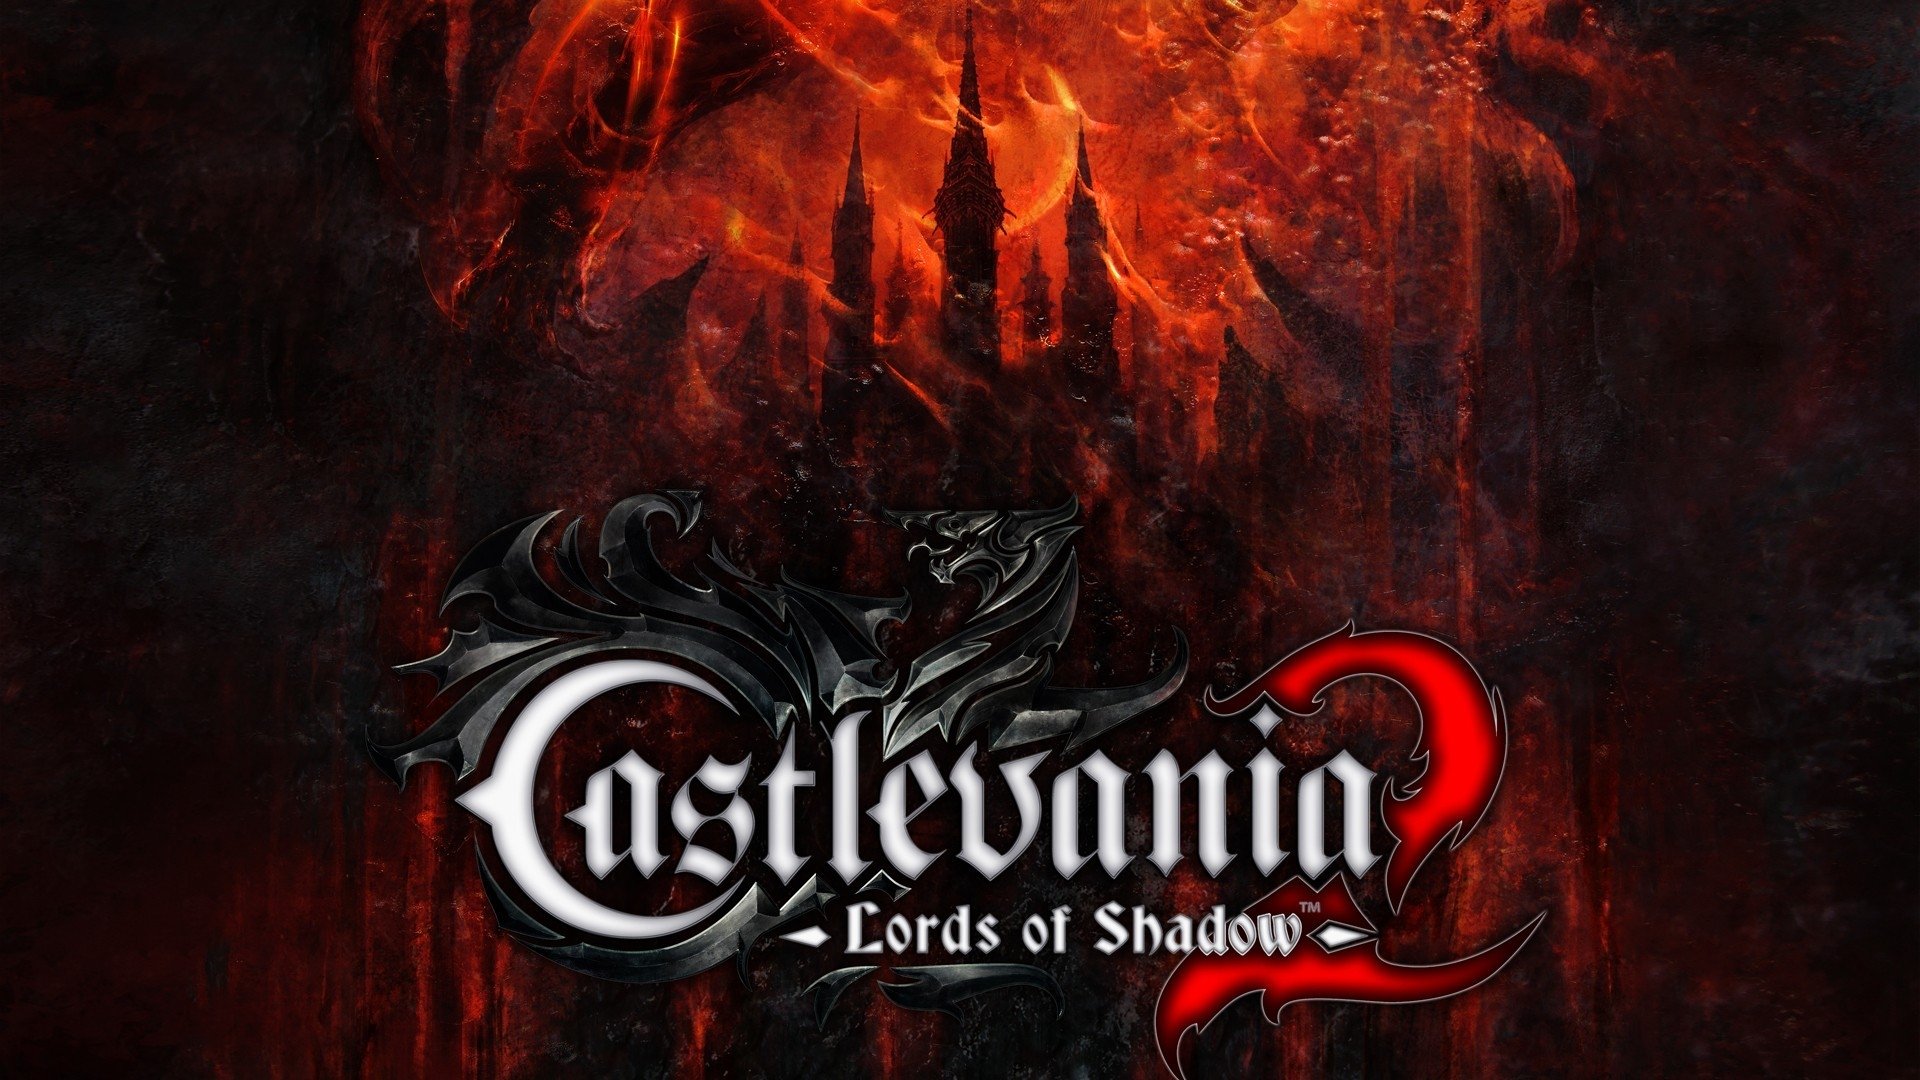 Castlevania, Castlevania: Lords of Shadow 2 Wallpaper